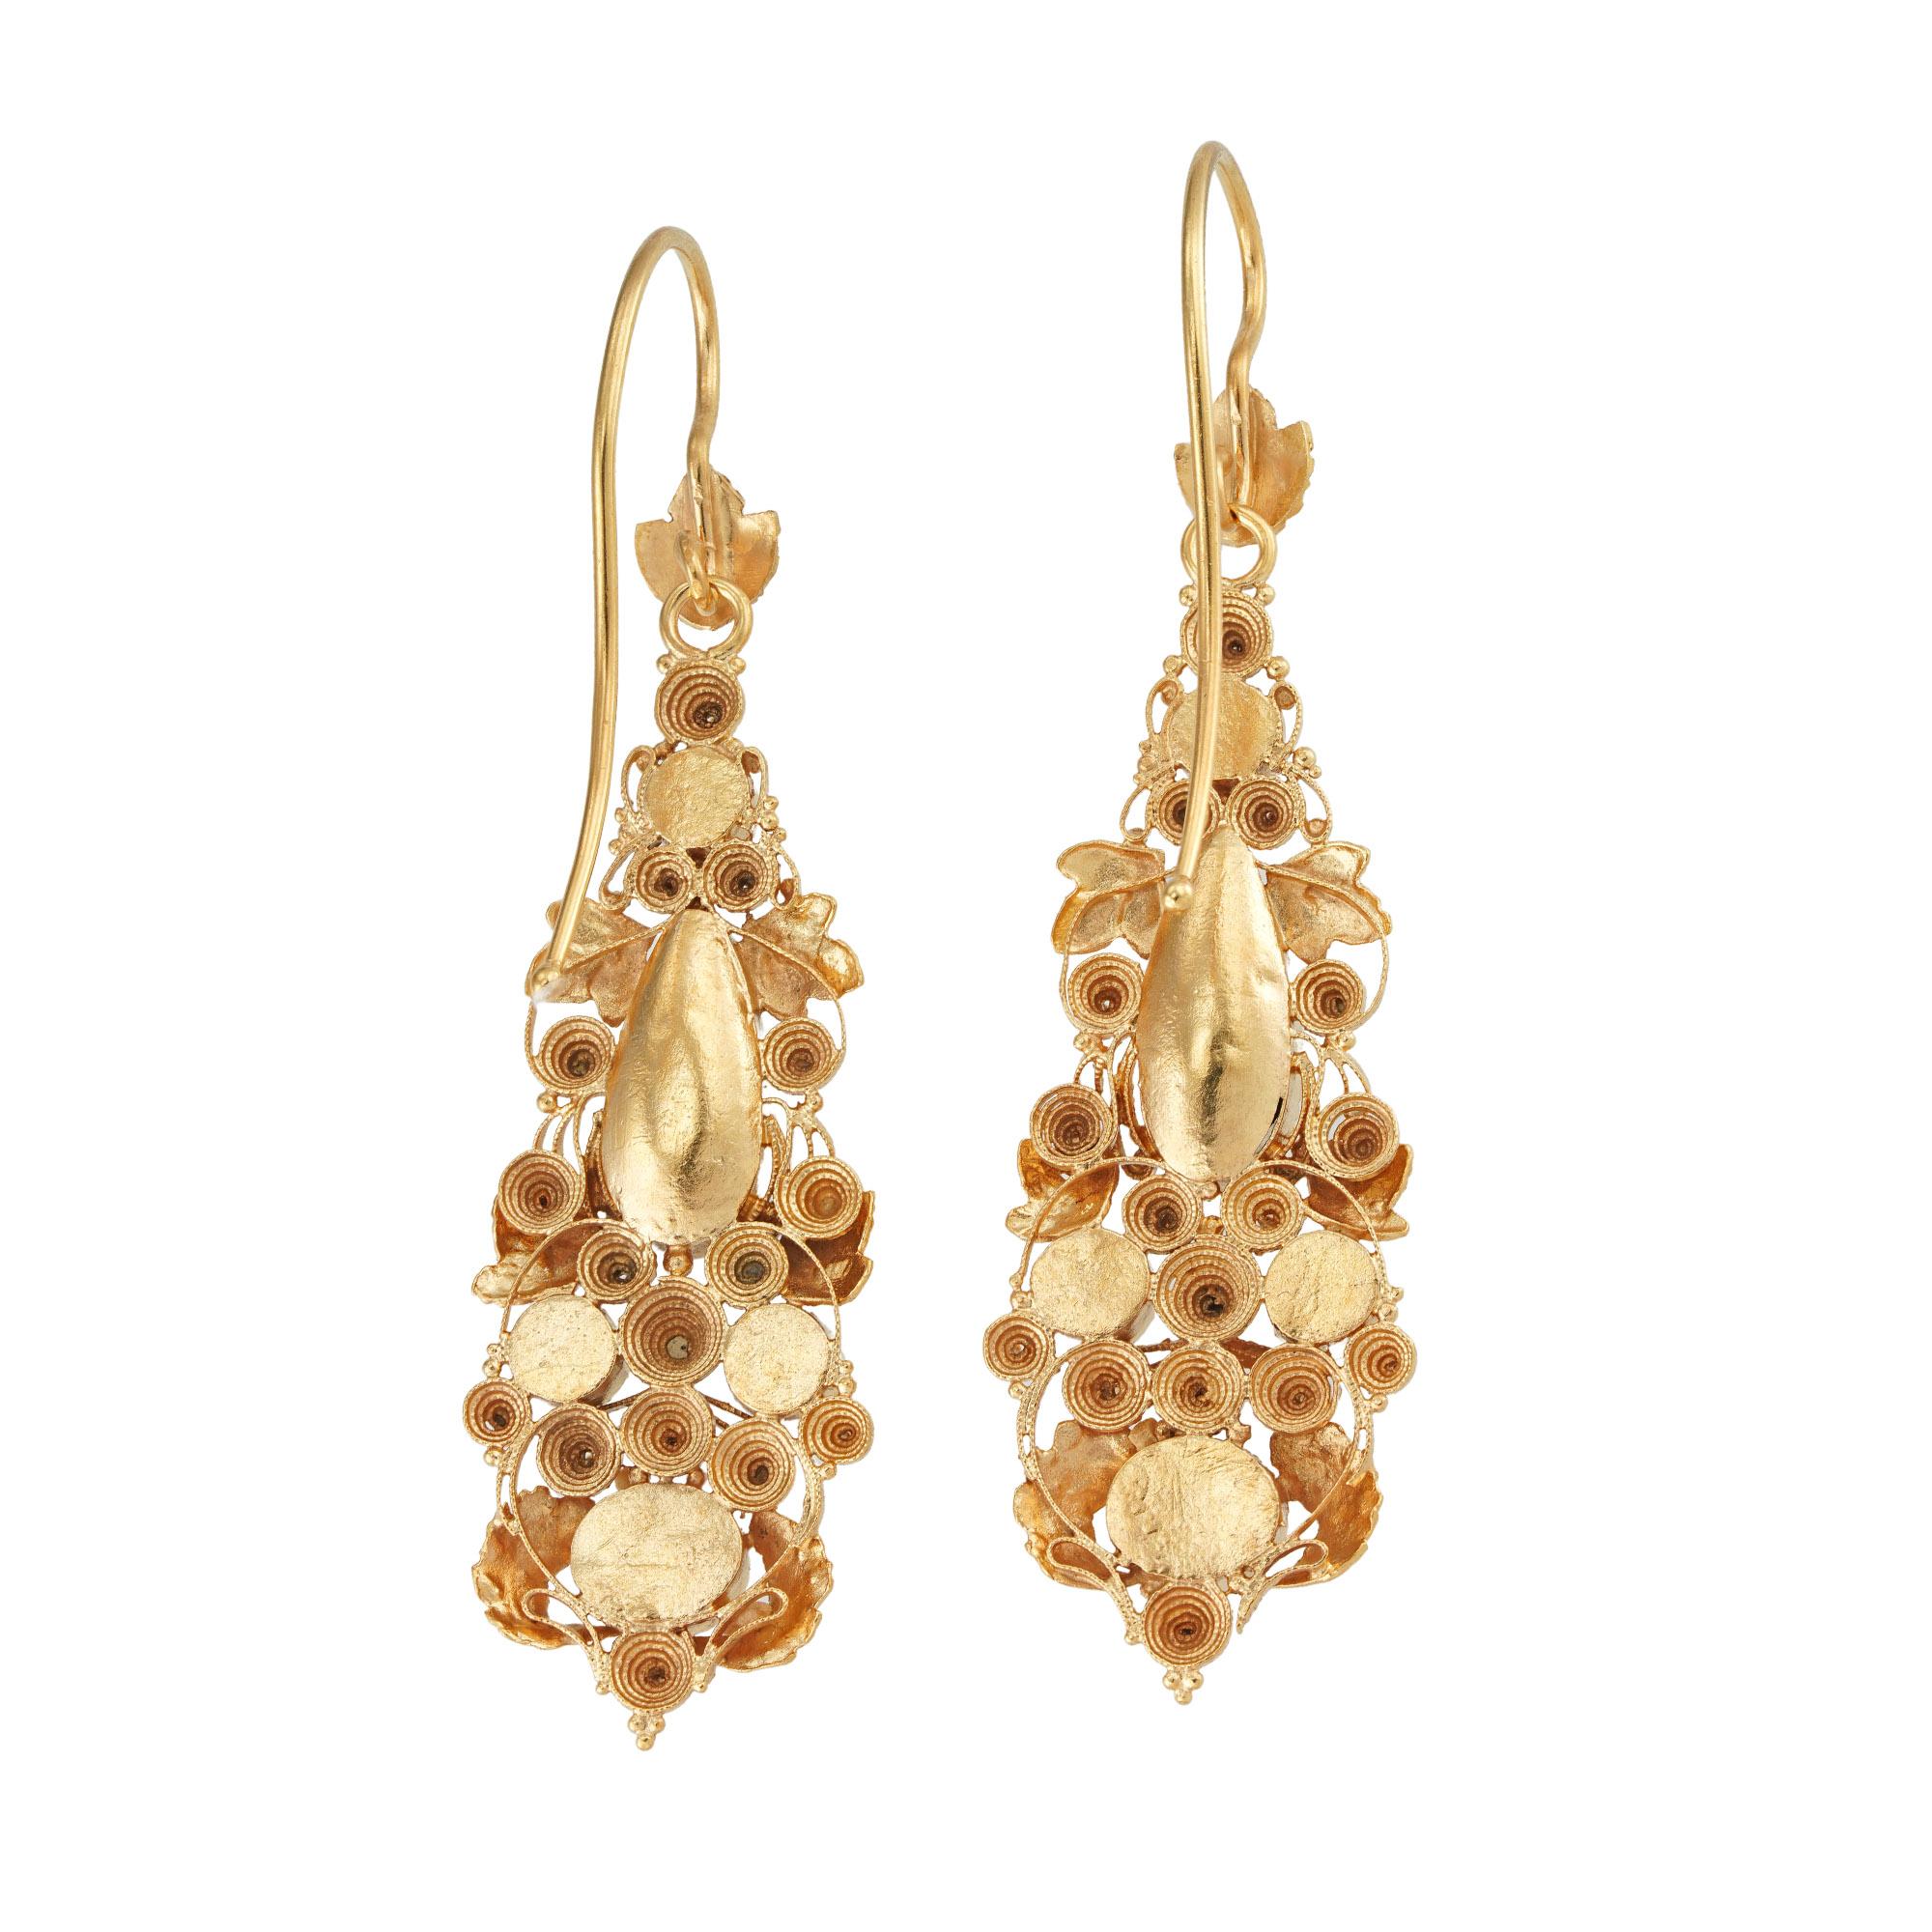 Ein Paar Regency-Ohrringe aus Gelbgold und mit Edelsteinen besetzte Cannetille-Ohrringe. Die Goldtopas-Ohrringe sind in dreifarbige Gold-Cannetille-Arbeiten im Blattwerk-Stil eingefasst, mit Goldhakenbeschlägen, um 1820, Maße ca. 4,5 x 1,4 cm,